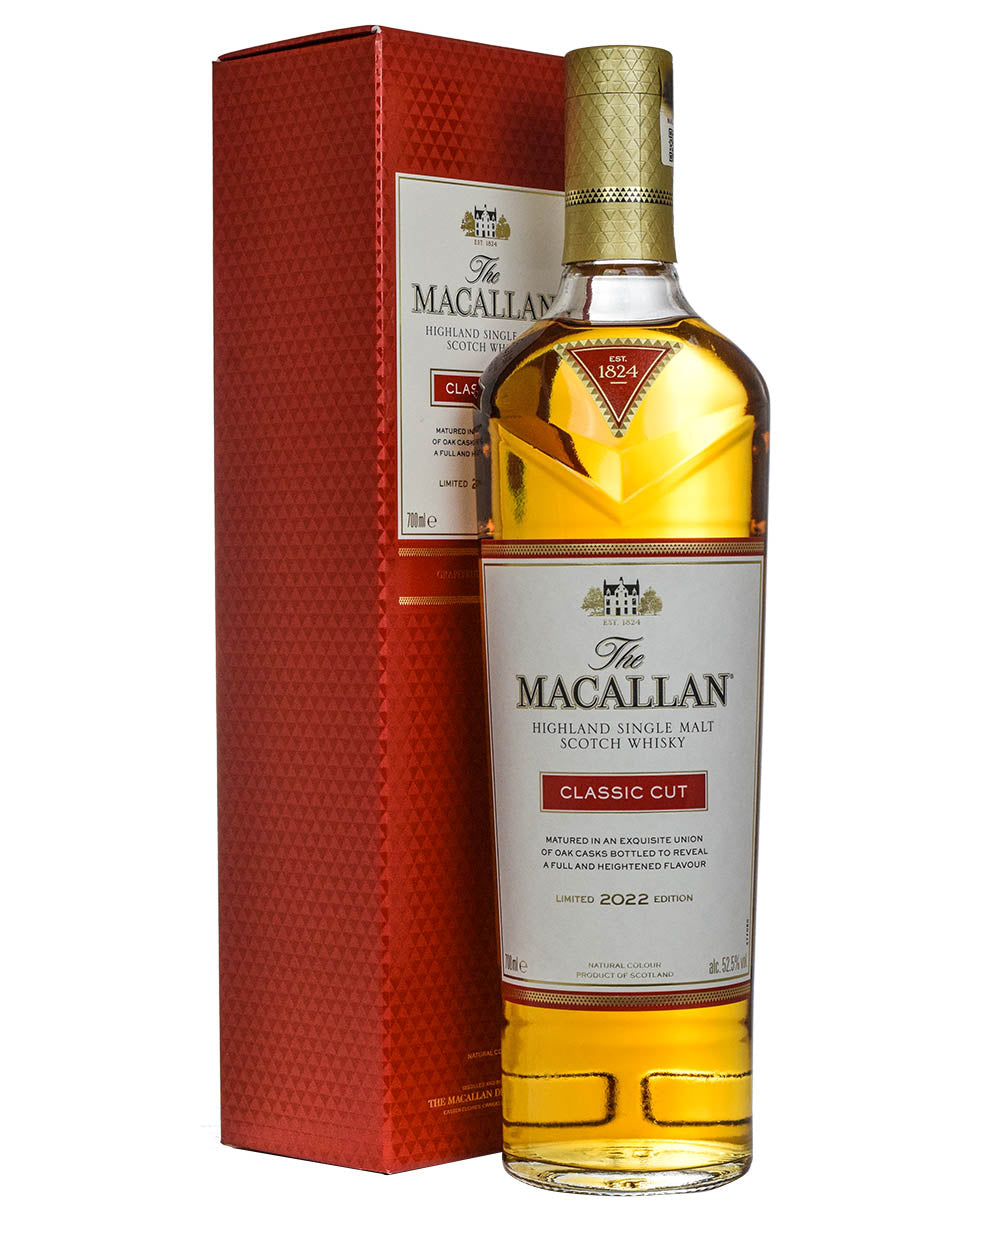 The Macallan Classic Cut - 2017 Release